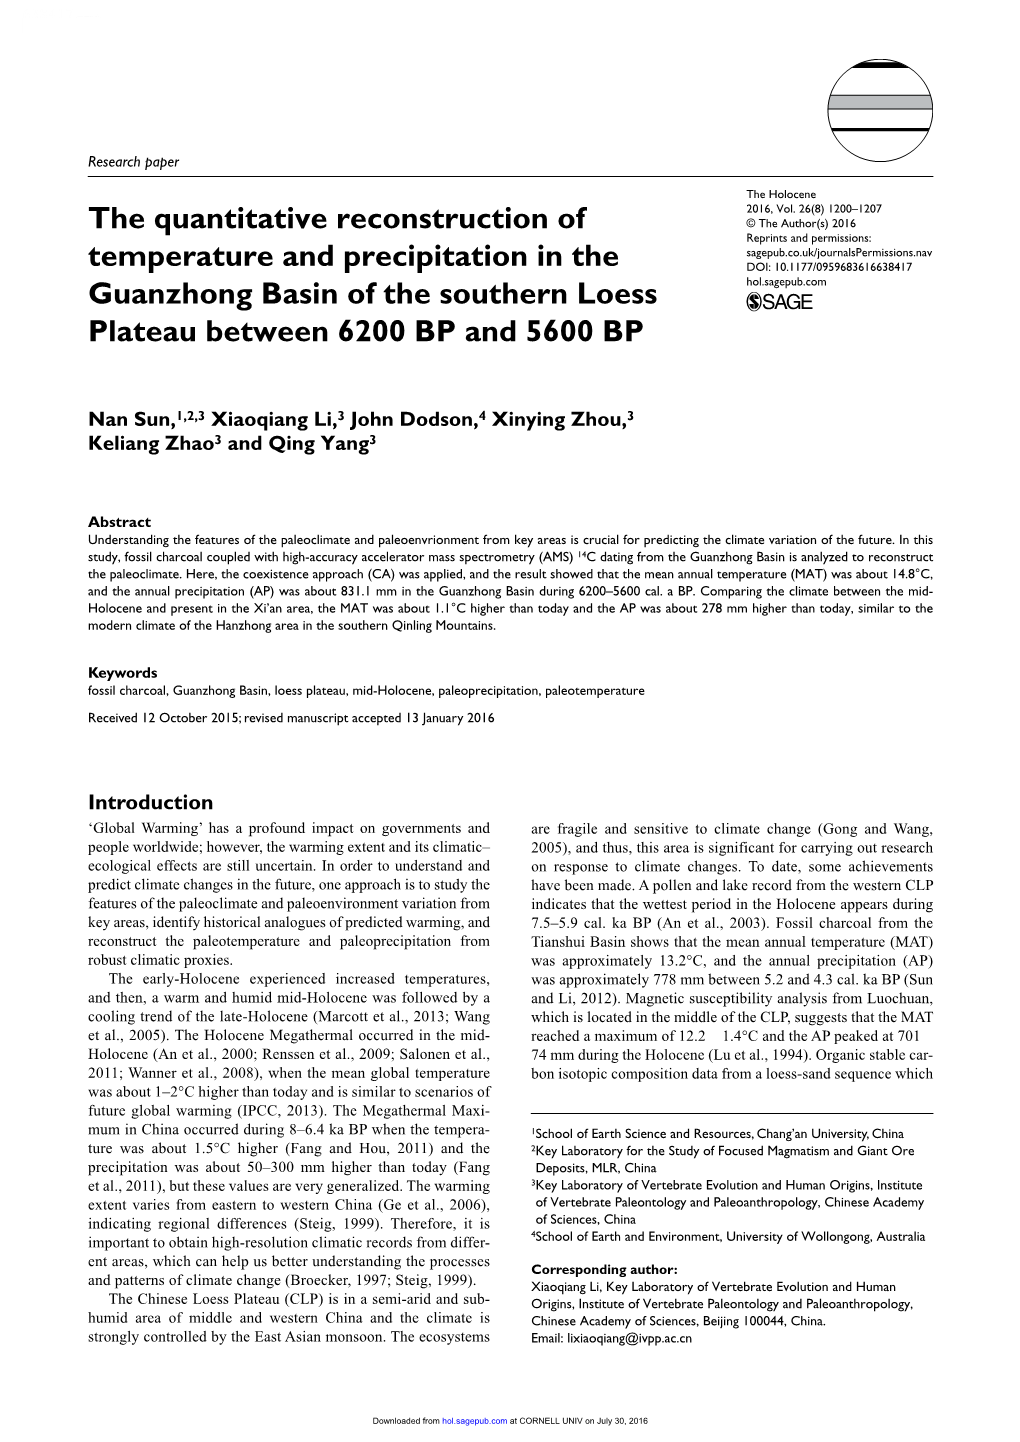 The Quantitative Reconstruction of Temperature and Precipitation In